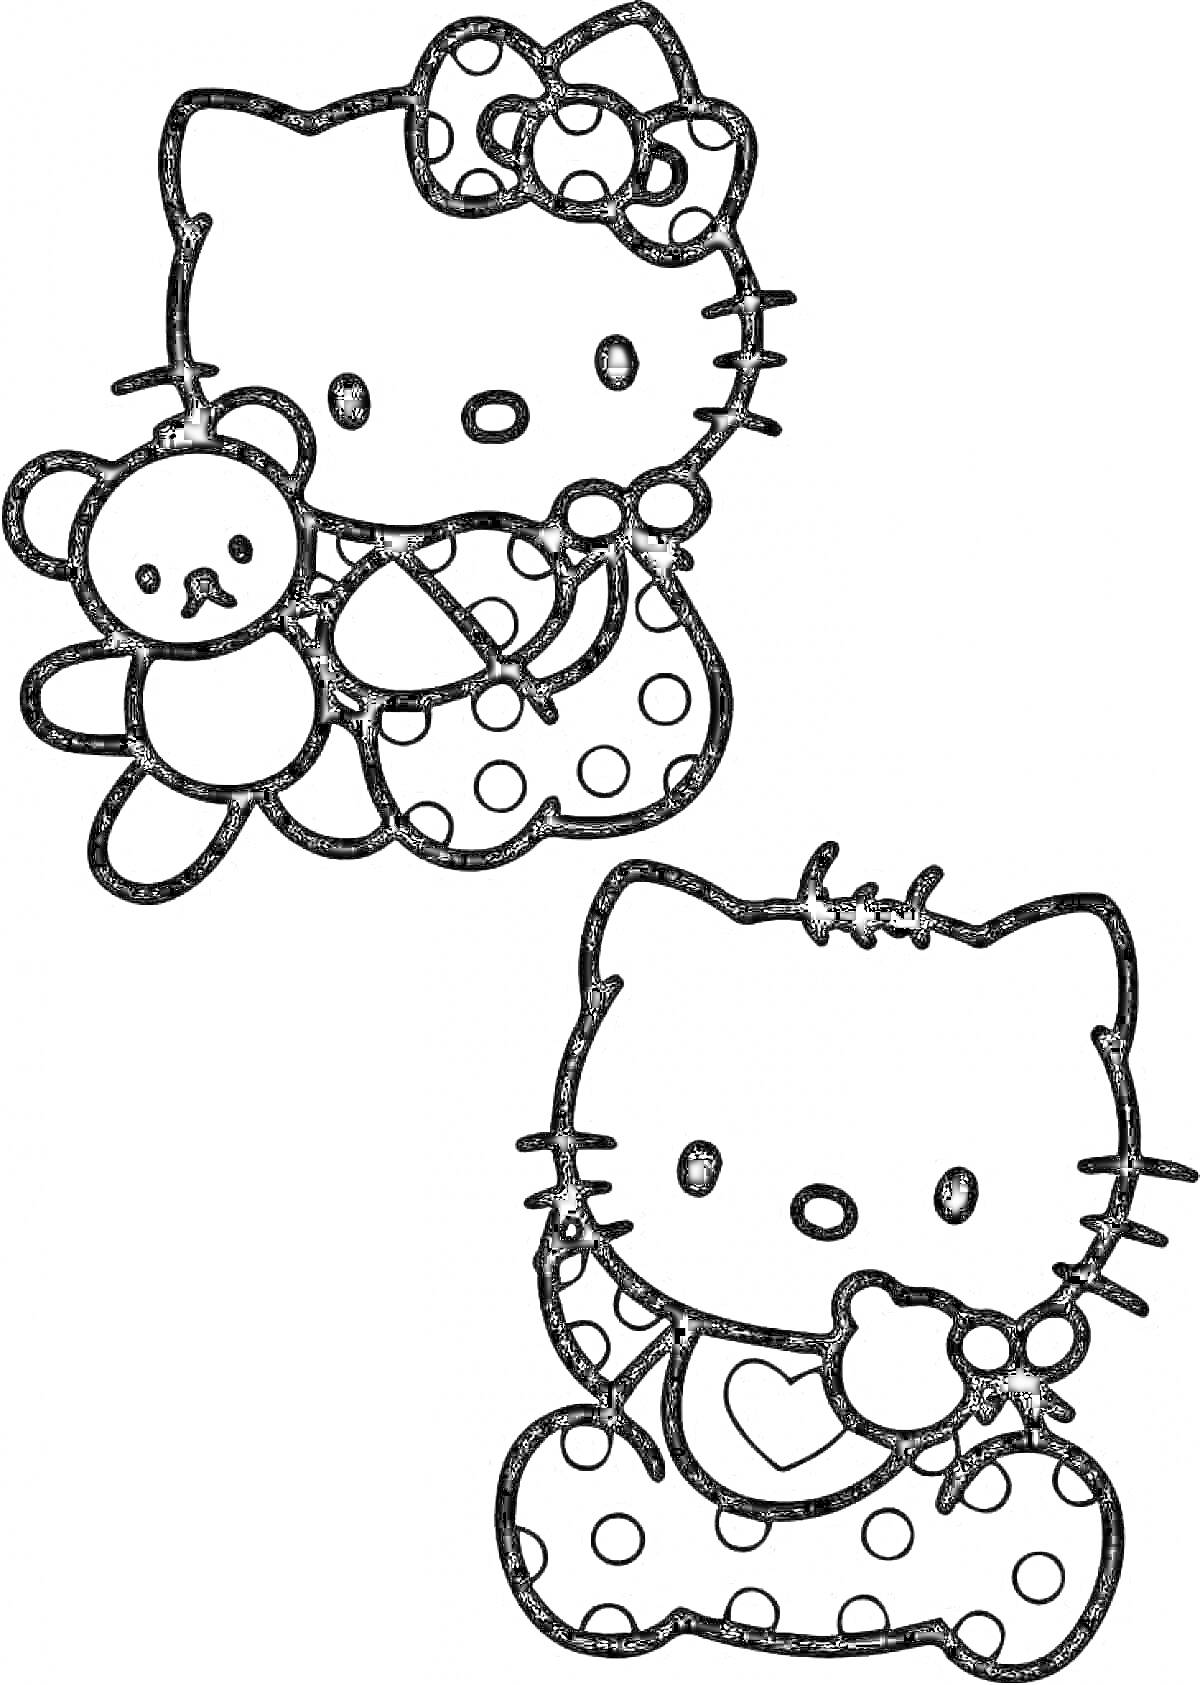 Раскраска Хеллоу Китти с бантом и игрушечным медведем, сидящая Хеллоу Китти с сердцем